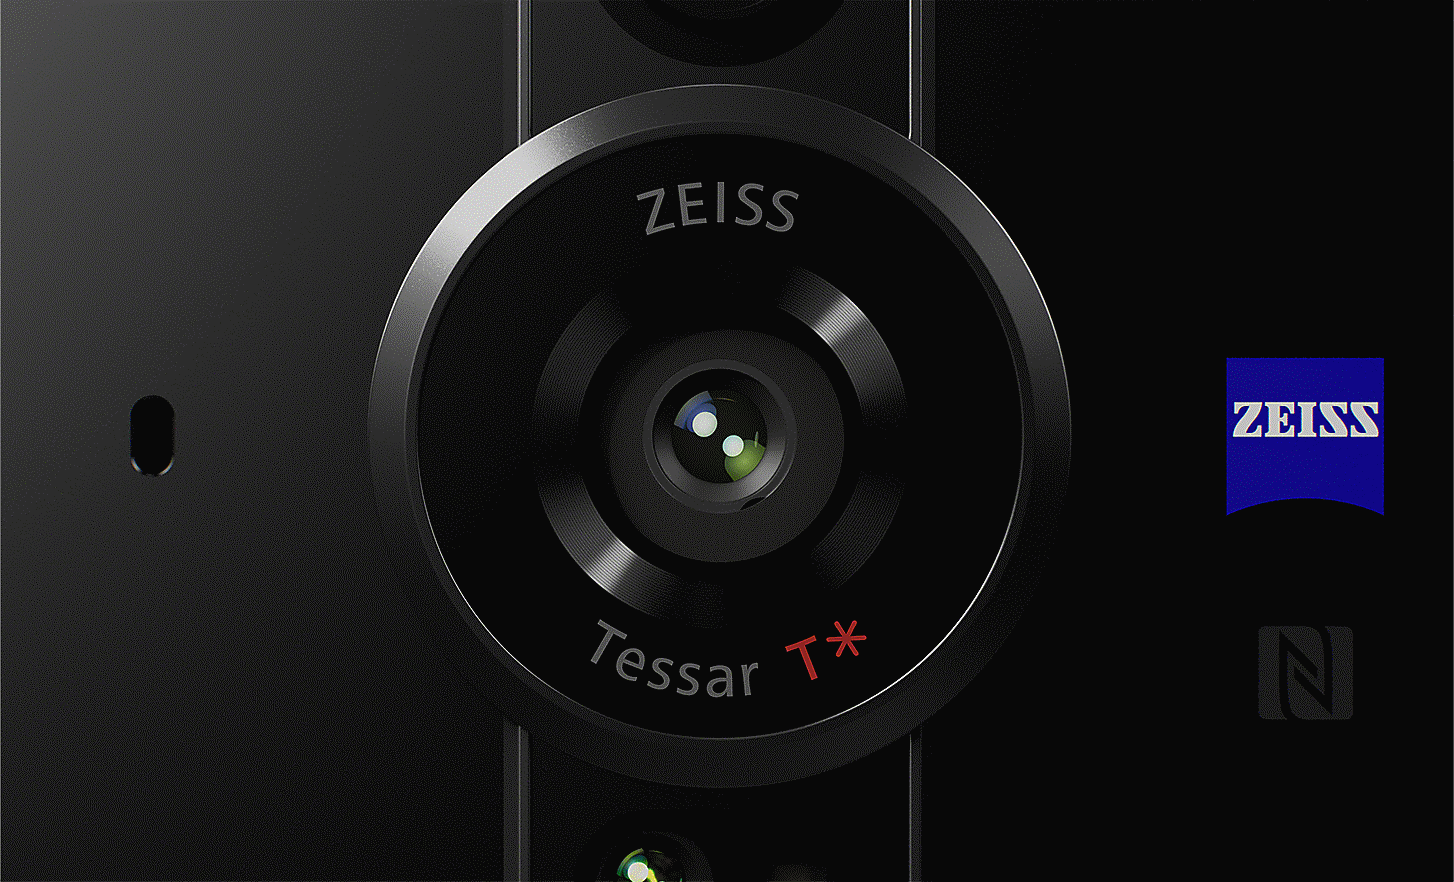 Záber zblízka na objektív ZEISS Tessar T* s logom ZEISS